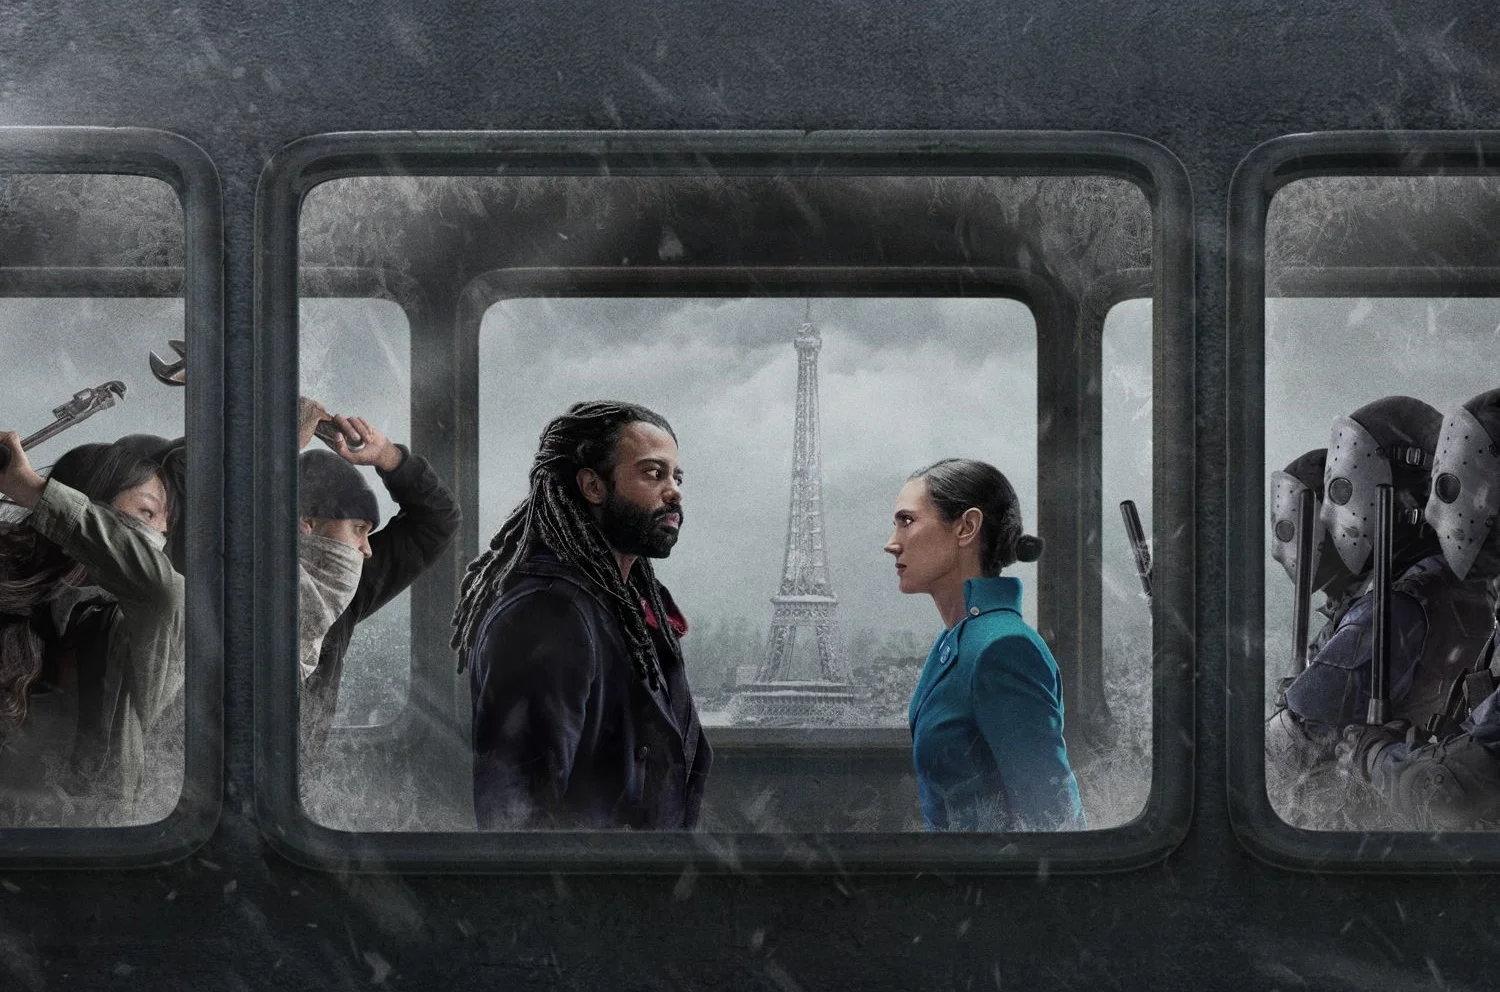 17 мая на канале TNT вышла первая серия адаптации французского графического романа «Сквозь снег» (Snowpiercer). И она, неожиданно, сфокусирована совсем не на революции.